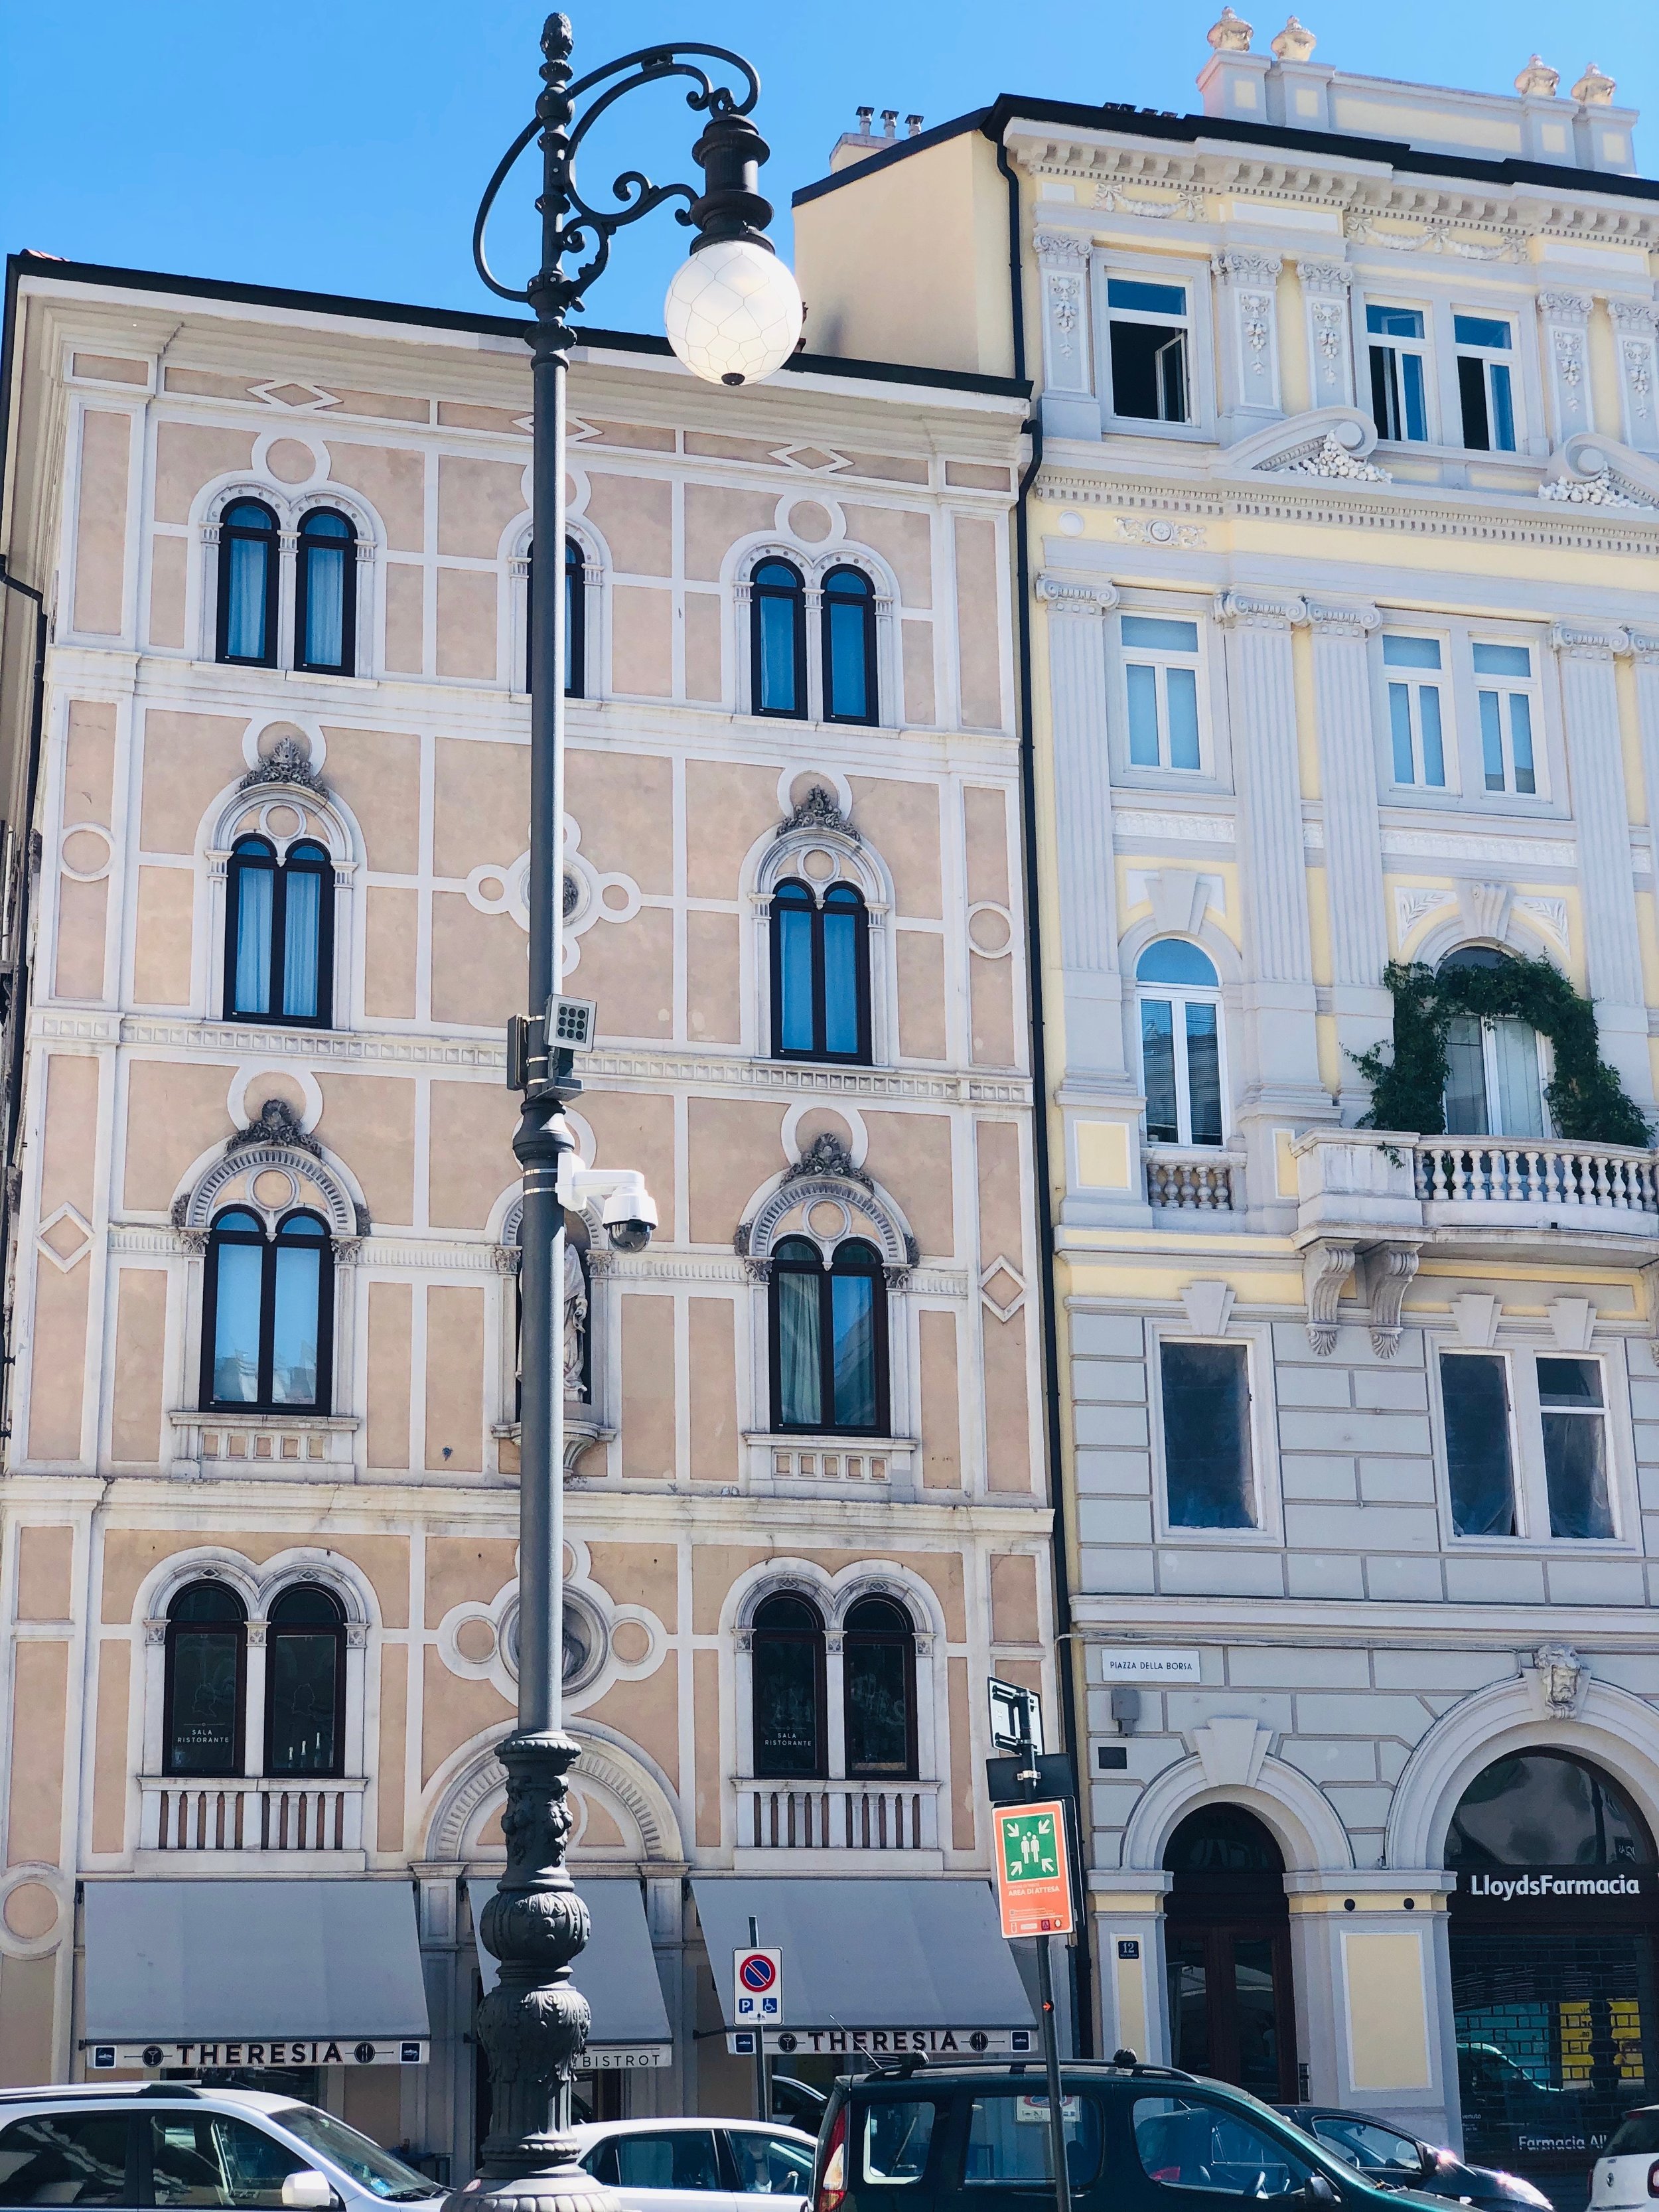 Trieste architecture.